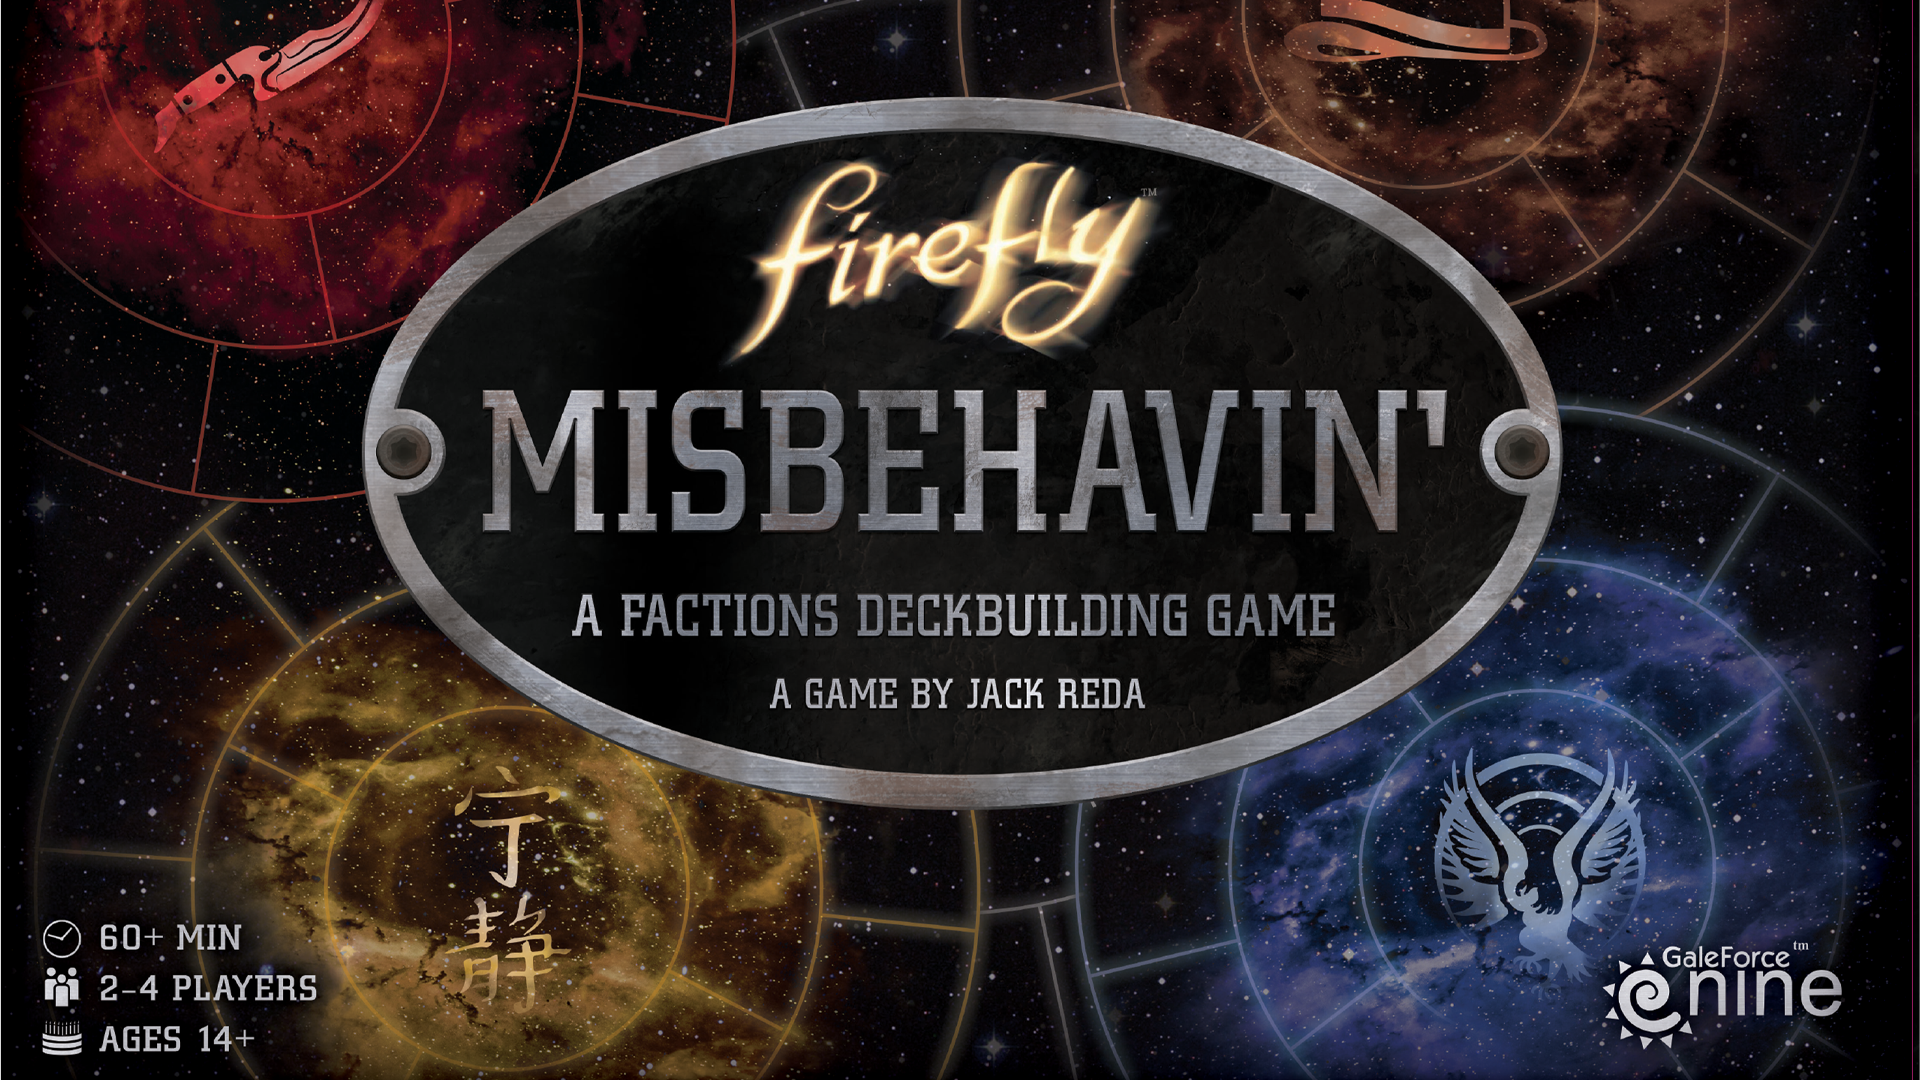 Image for Firefly: Misbehavin’